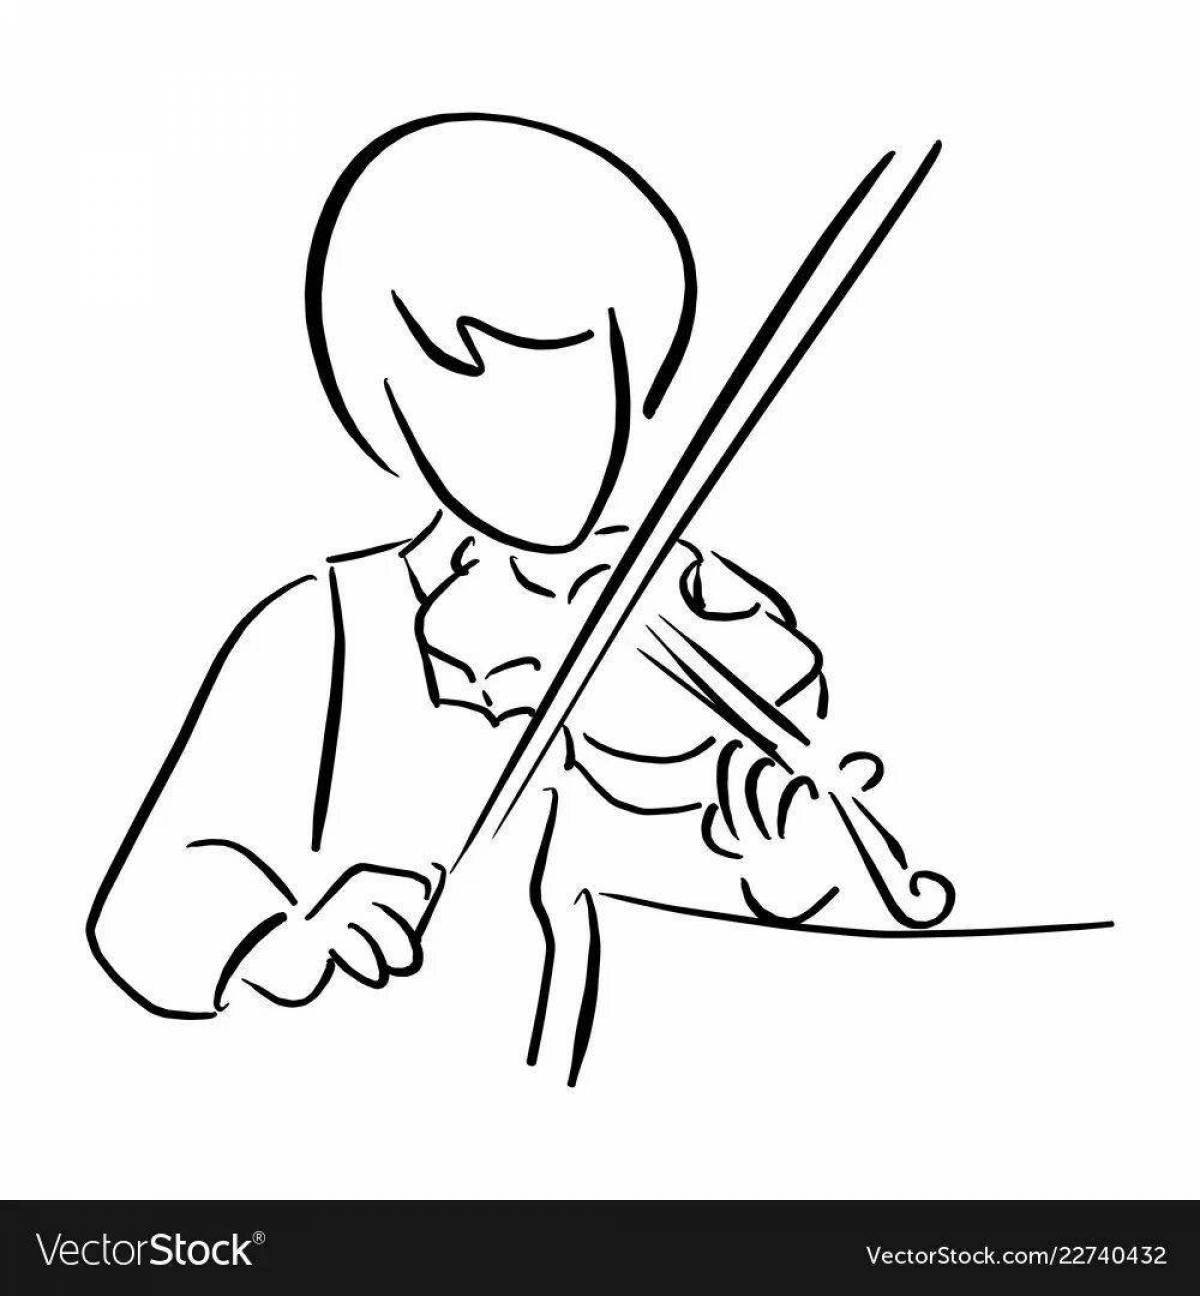 Sparkling coloring boy with violin